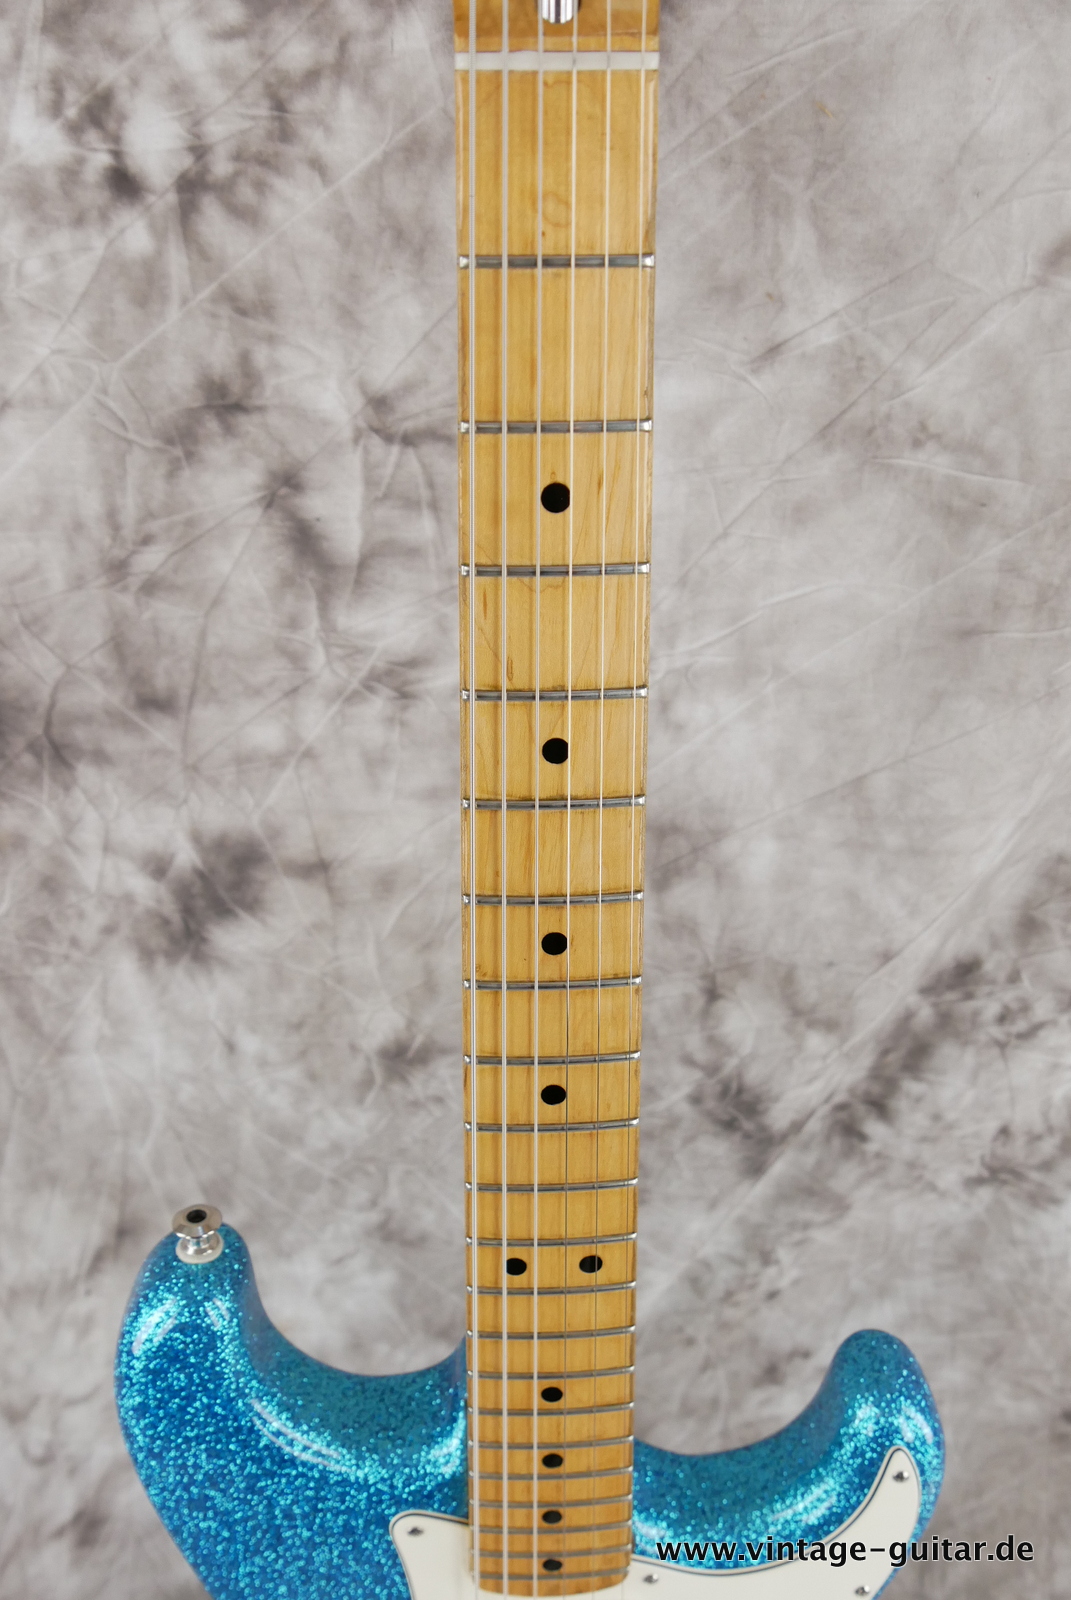 Fender-Stratocaster-1974c-blue-sparkle-007.JPG